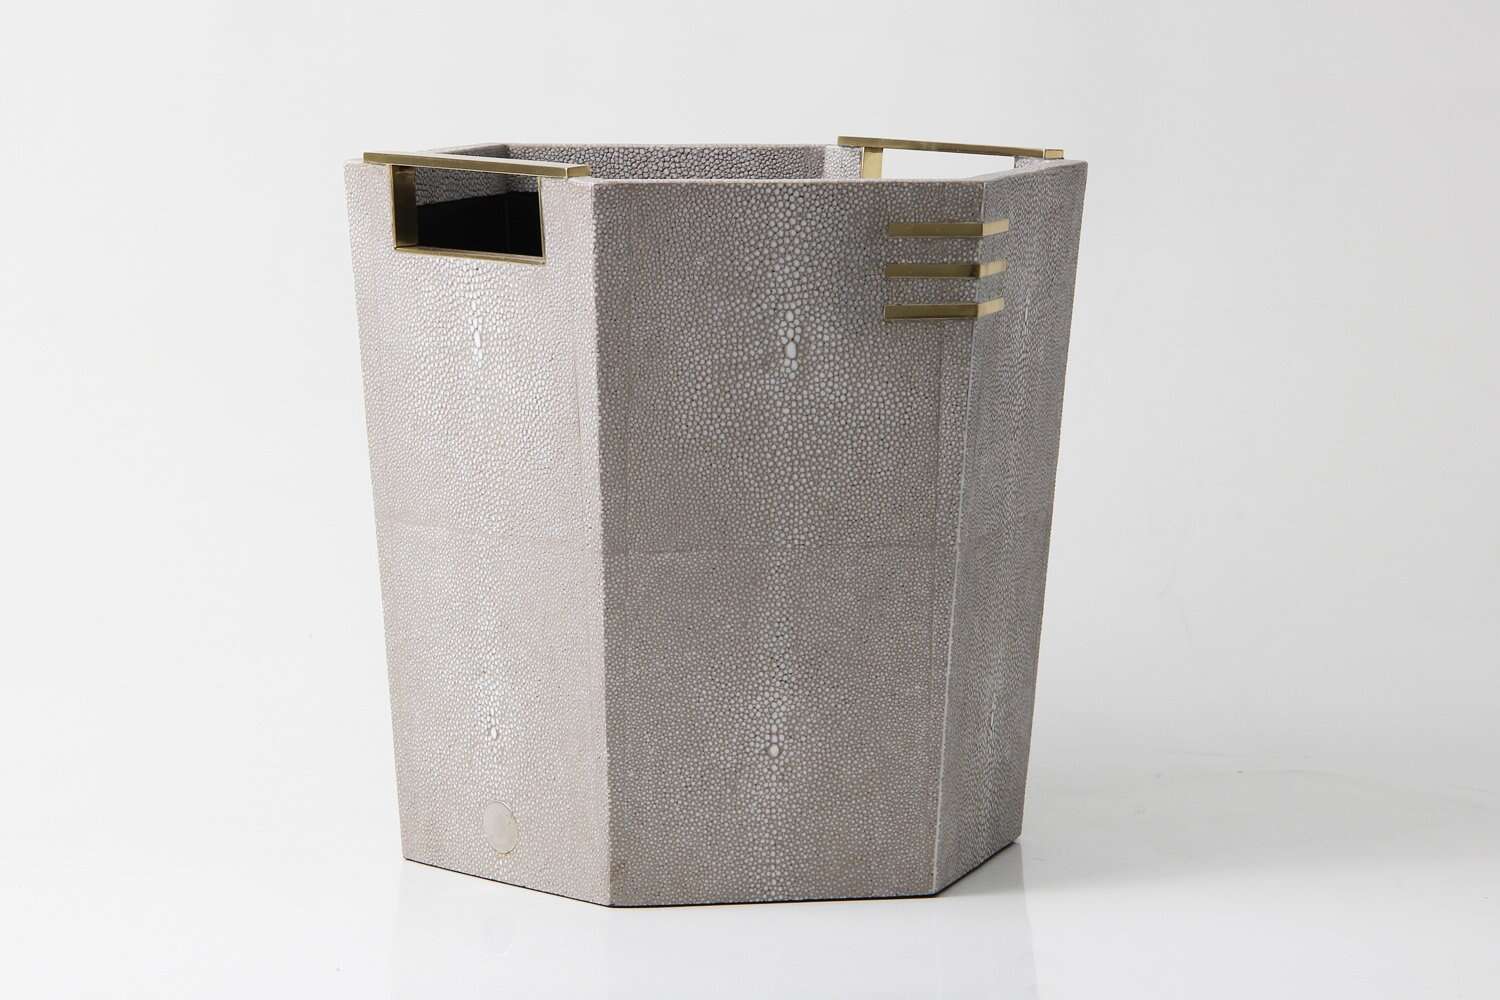 Waste paper bin in shagreen waste paper basket in shagreen